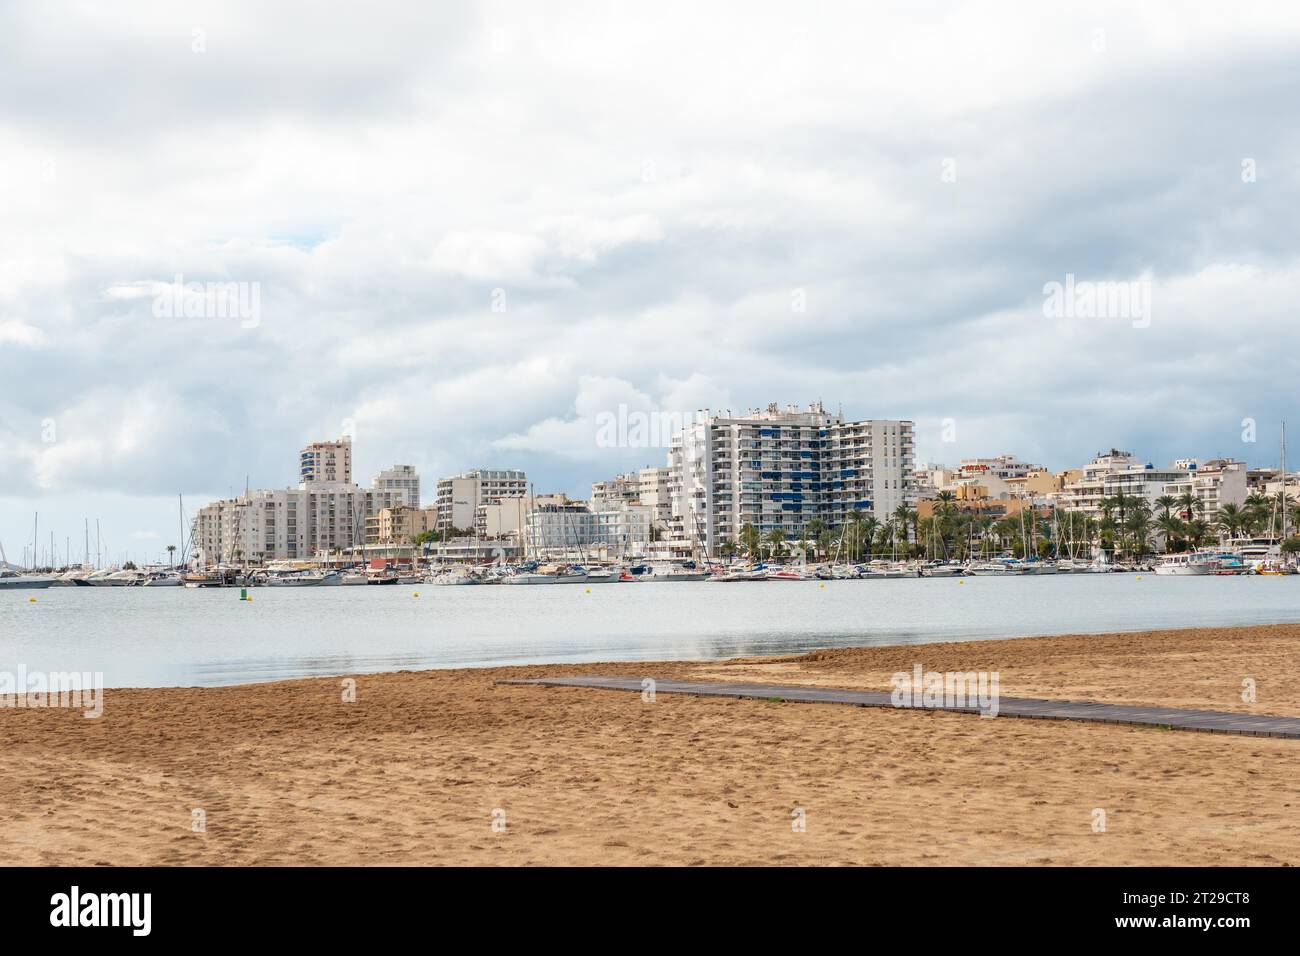 Spiaggia di Arenal nella città costiera di San Antonio Abad, isola di Ibiza. Baleari Foto Stock